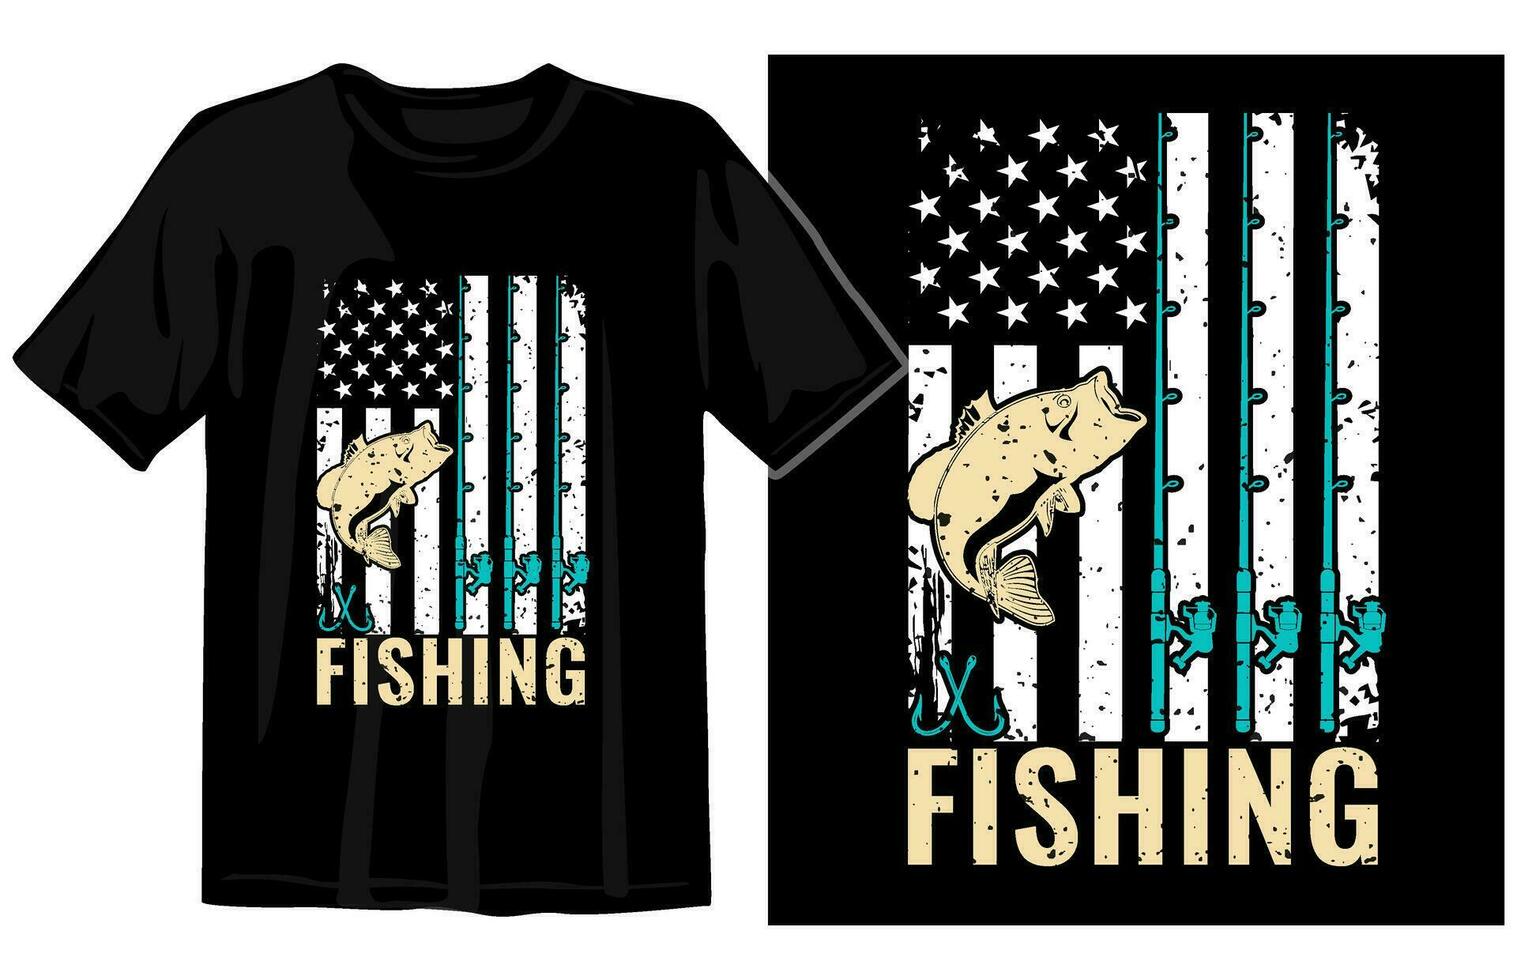 pescar t camisa vector, pescar Clásico t camisa diseño, Clásico pescar t camisa gráfico ilustración vector